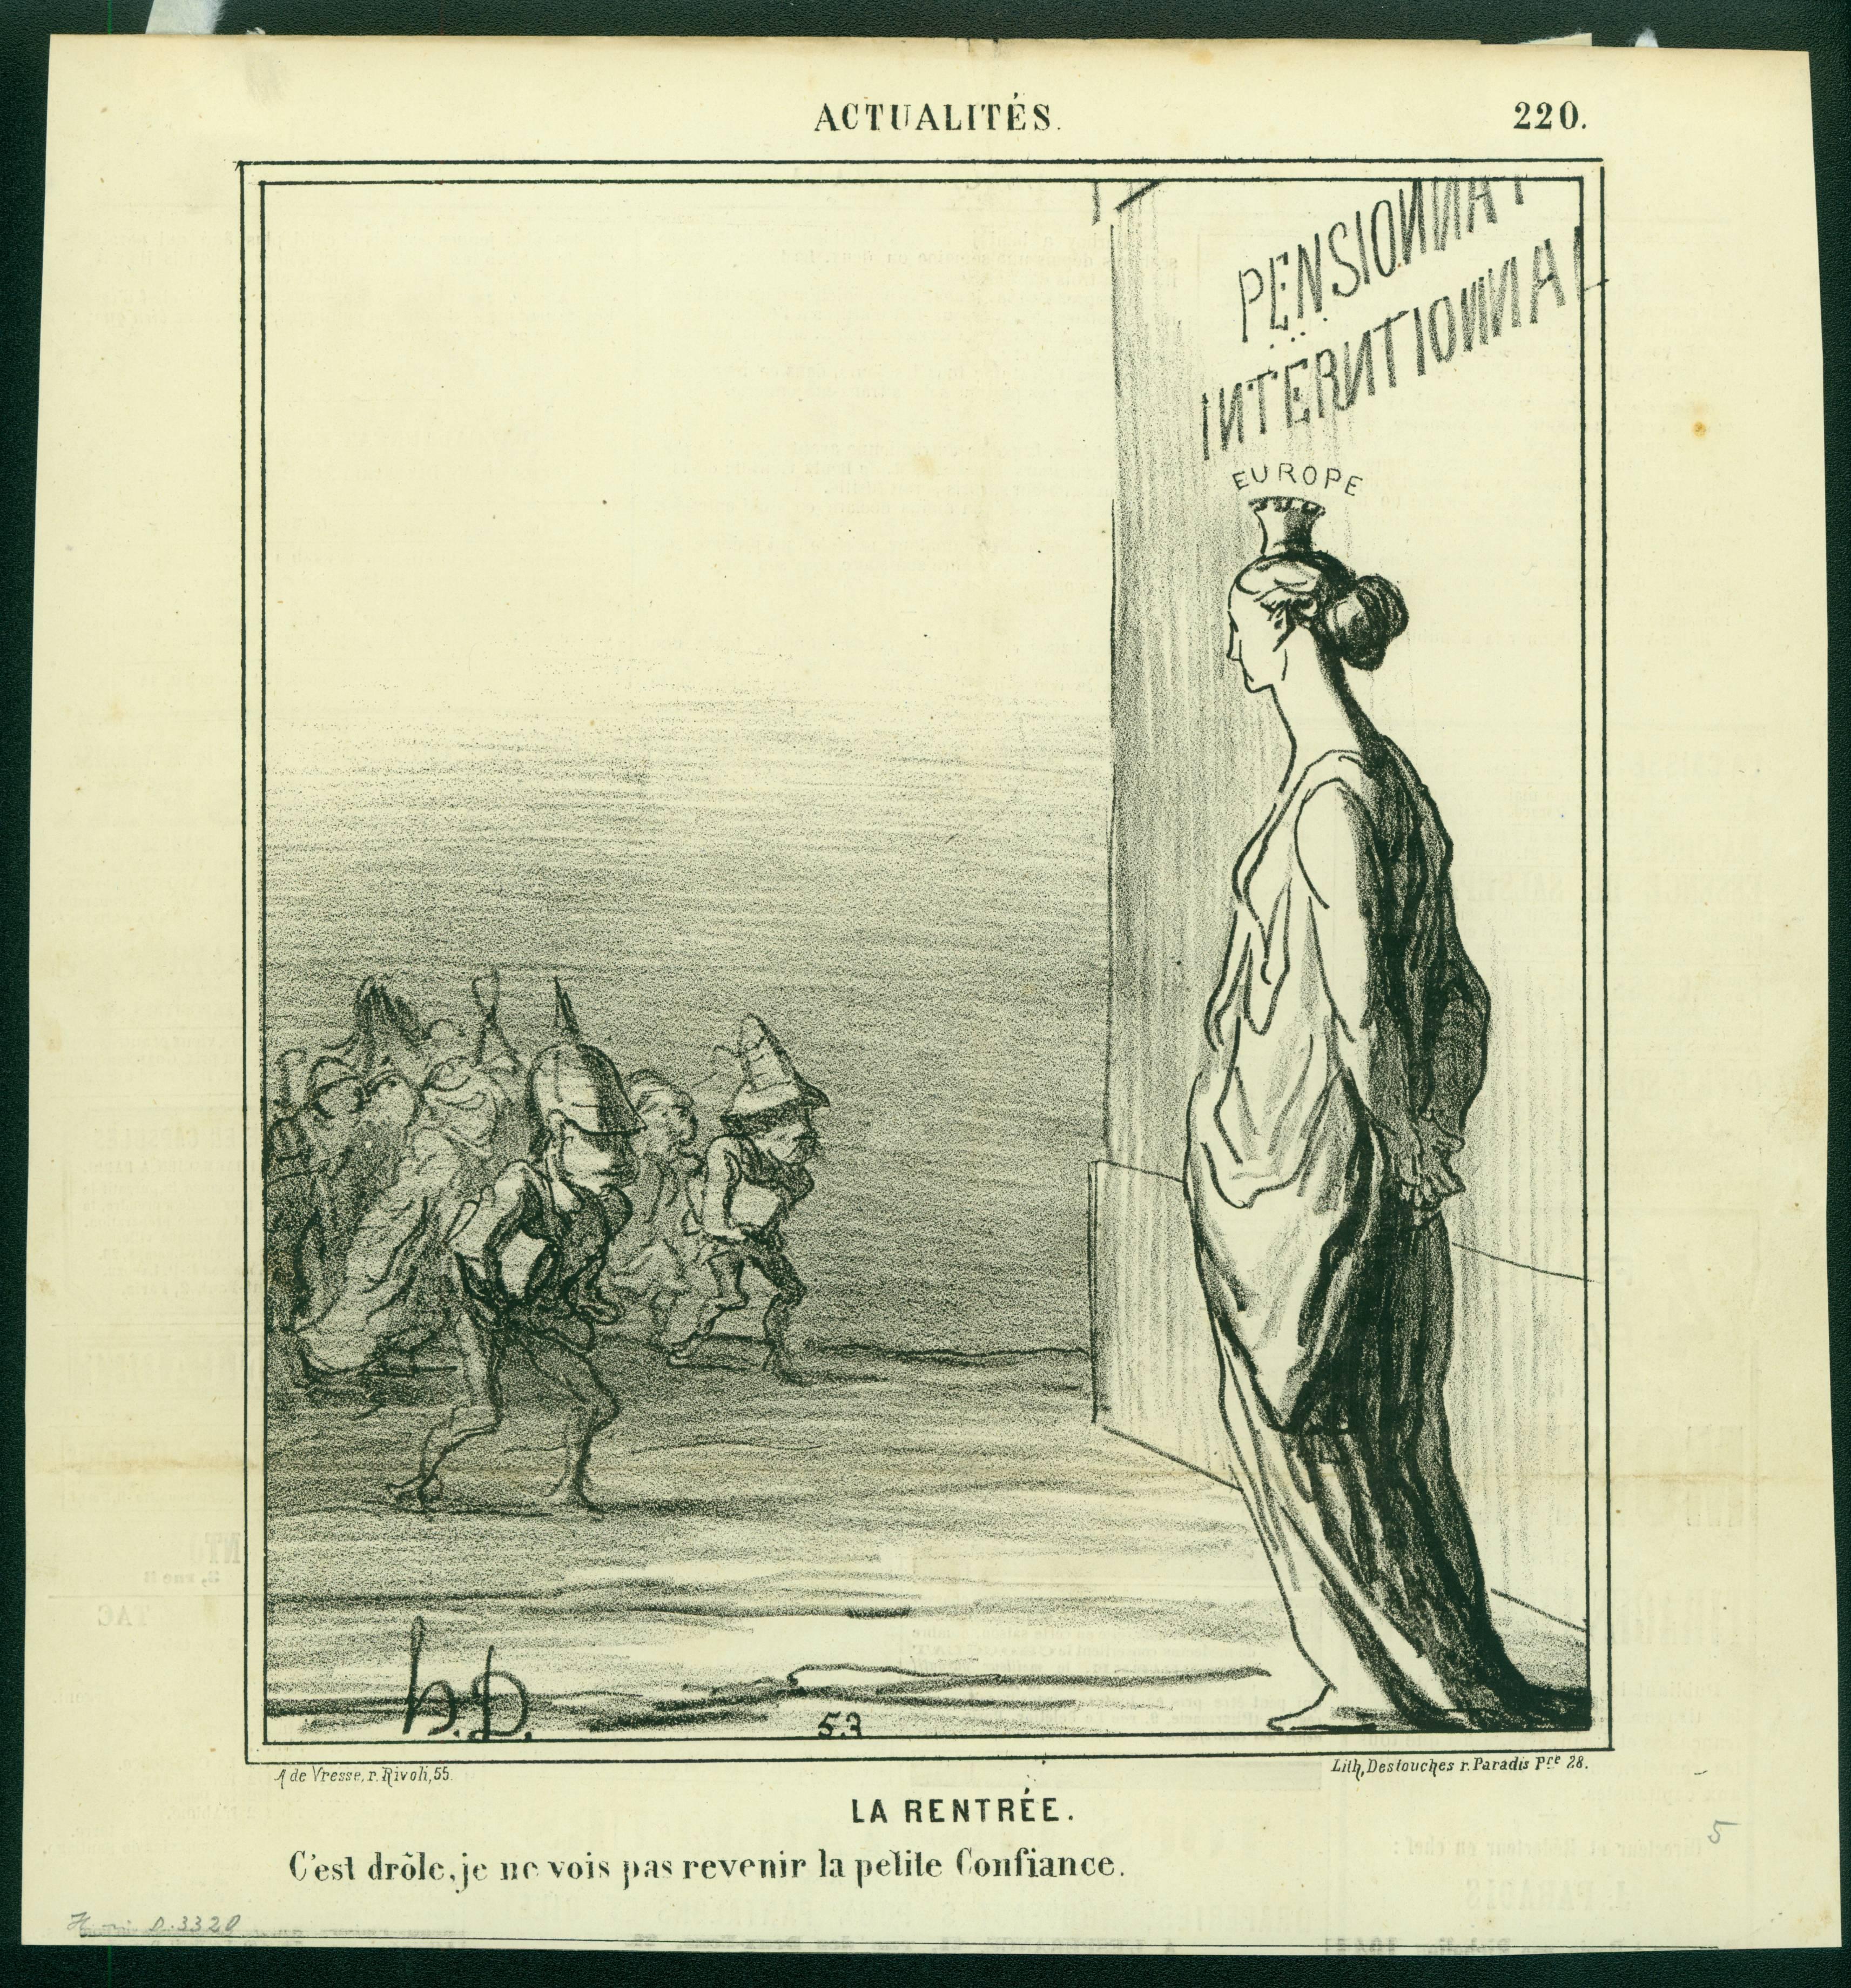 LA RENTRÉE. (The Return) - Print by Honoré Daumier